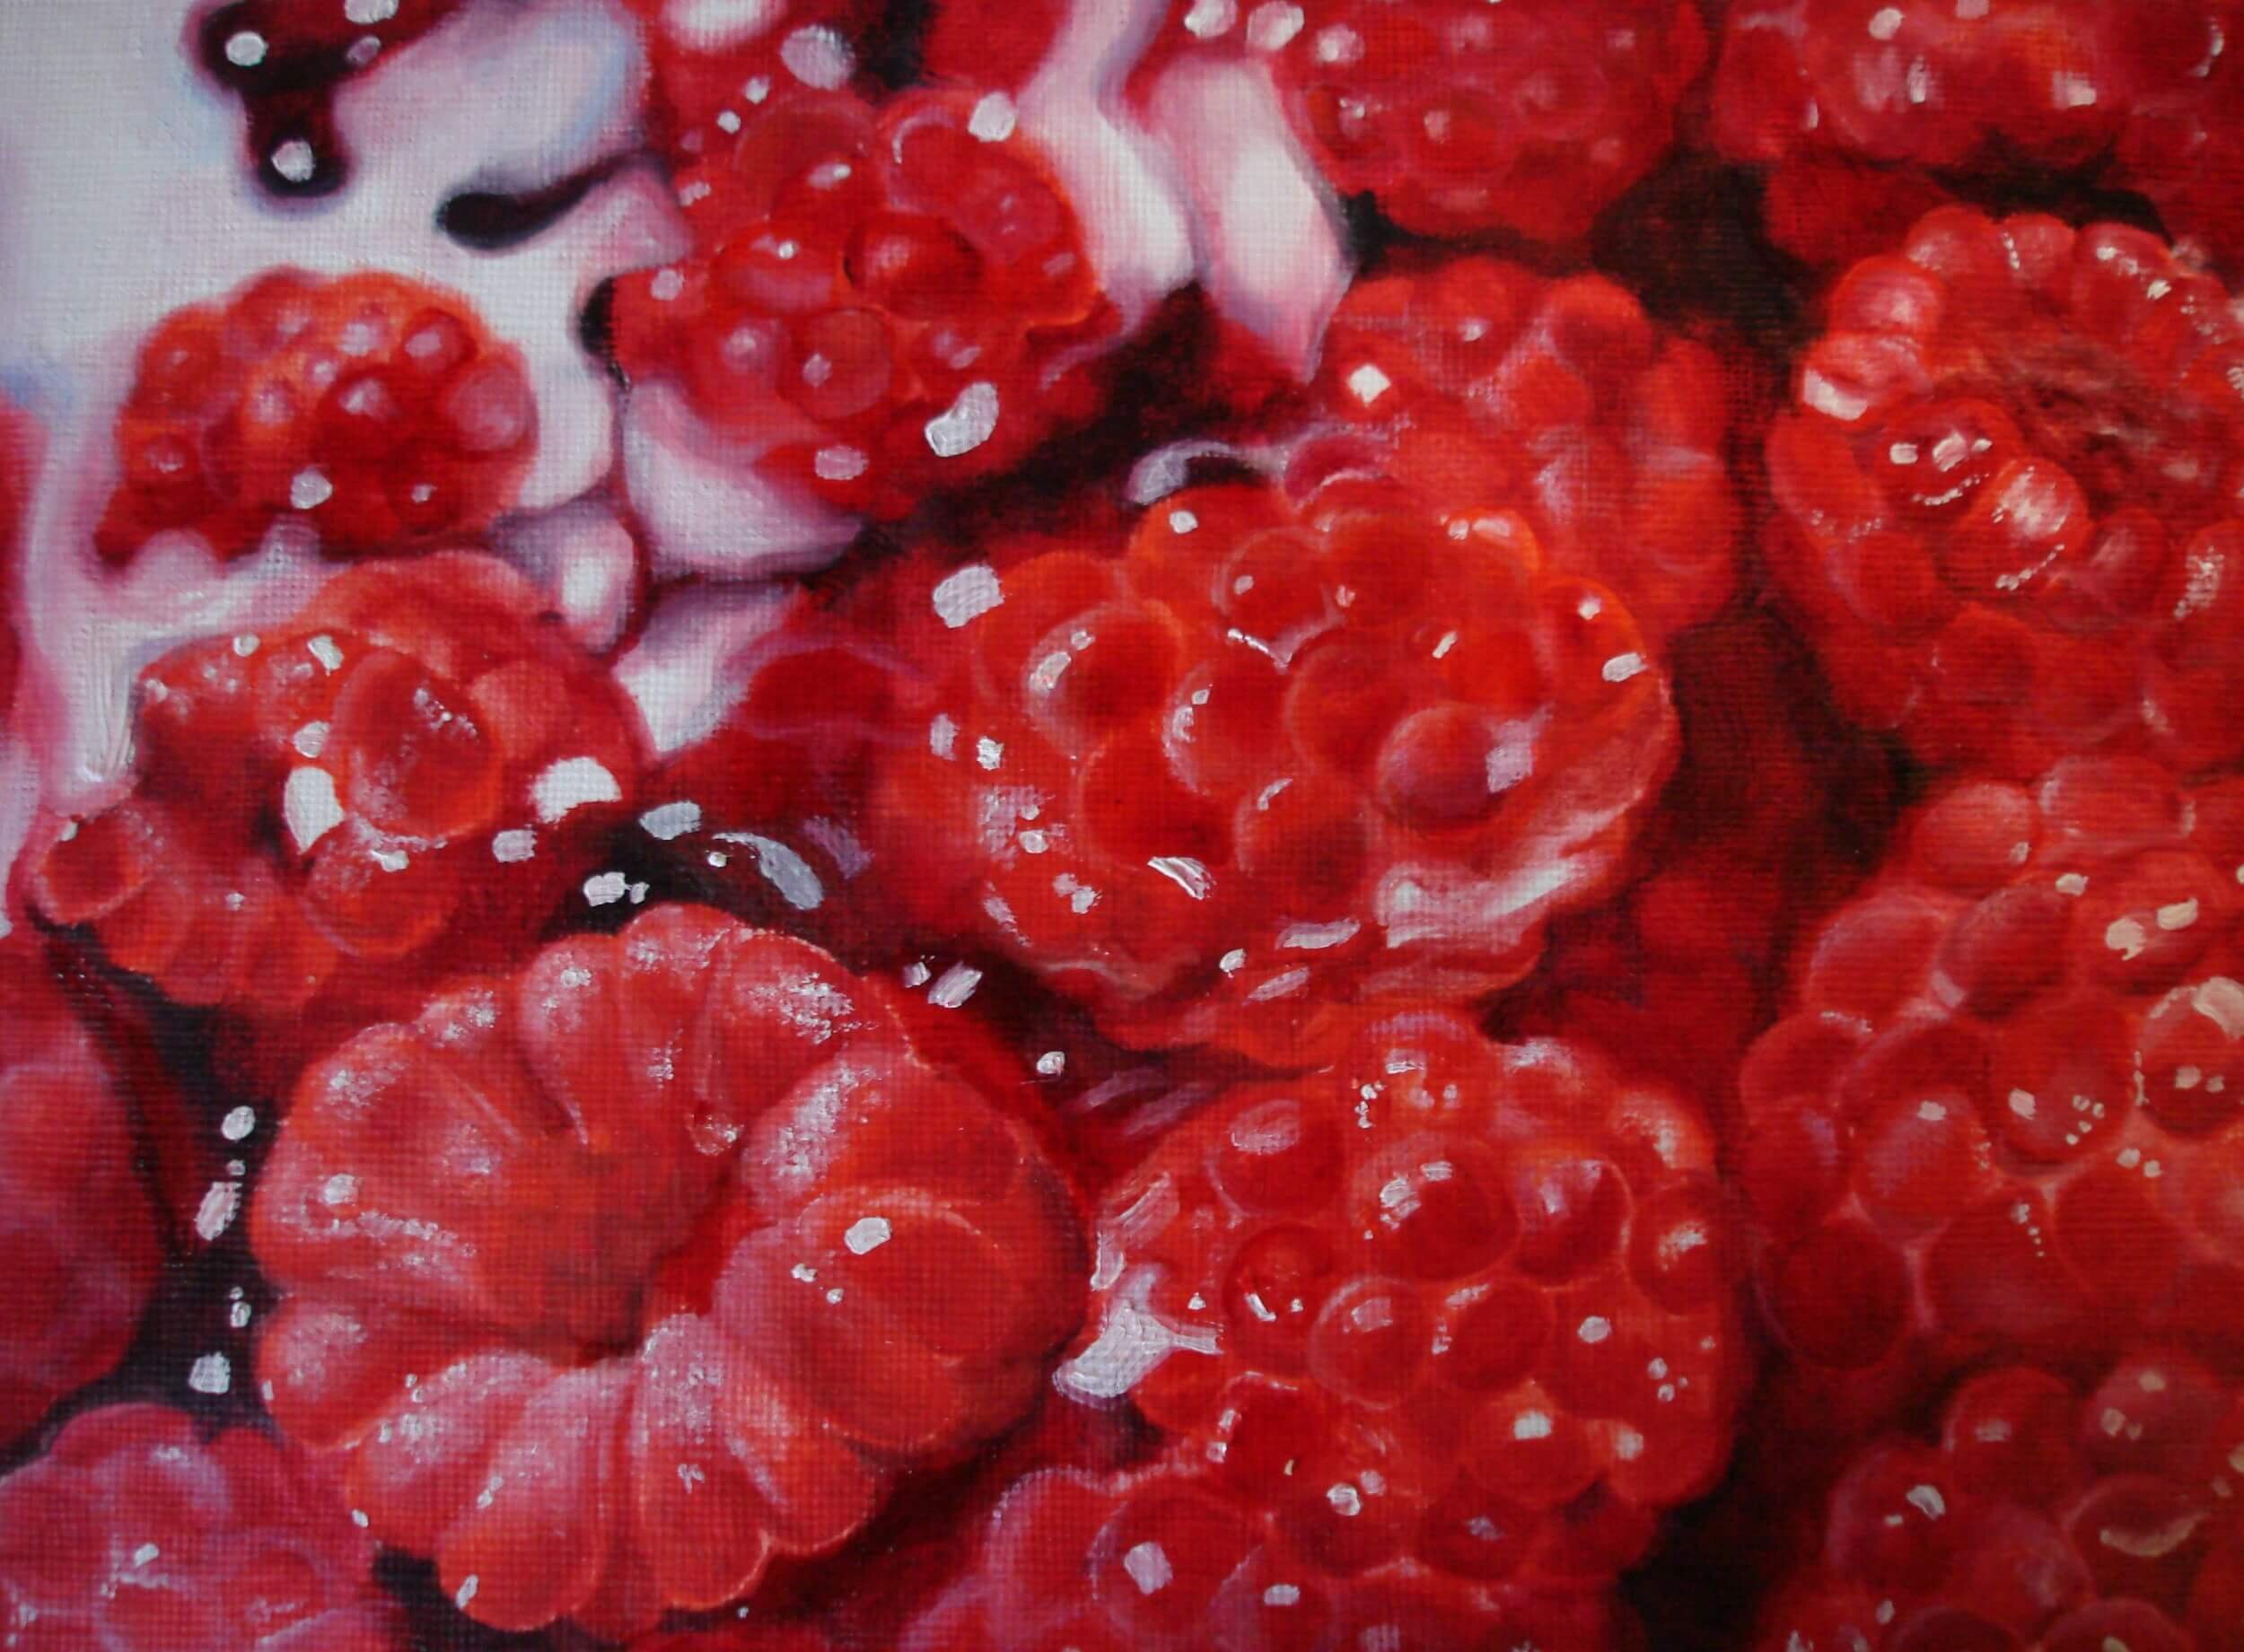 Raspberries, 12"x9" - 2007